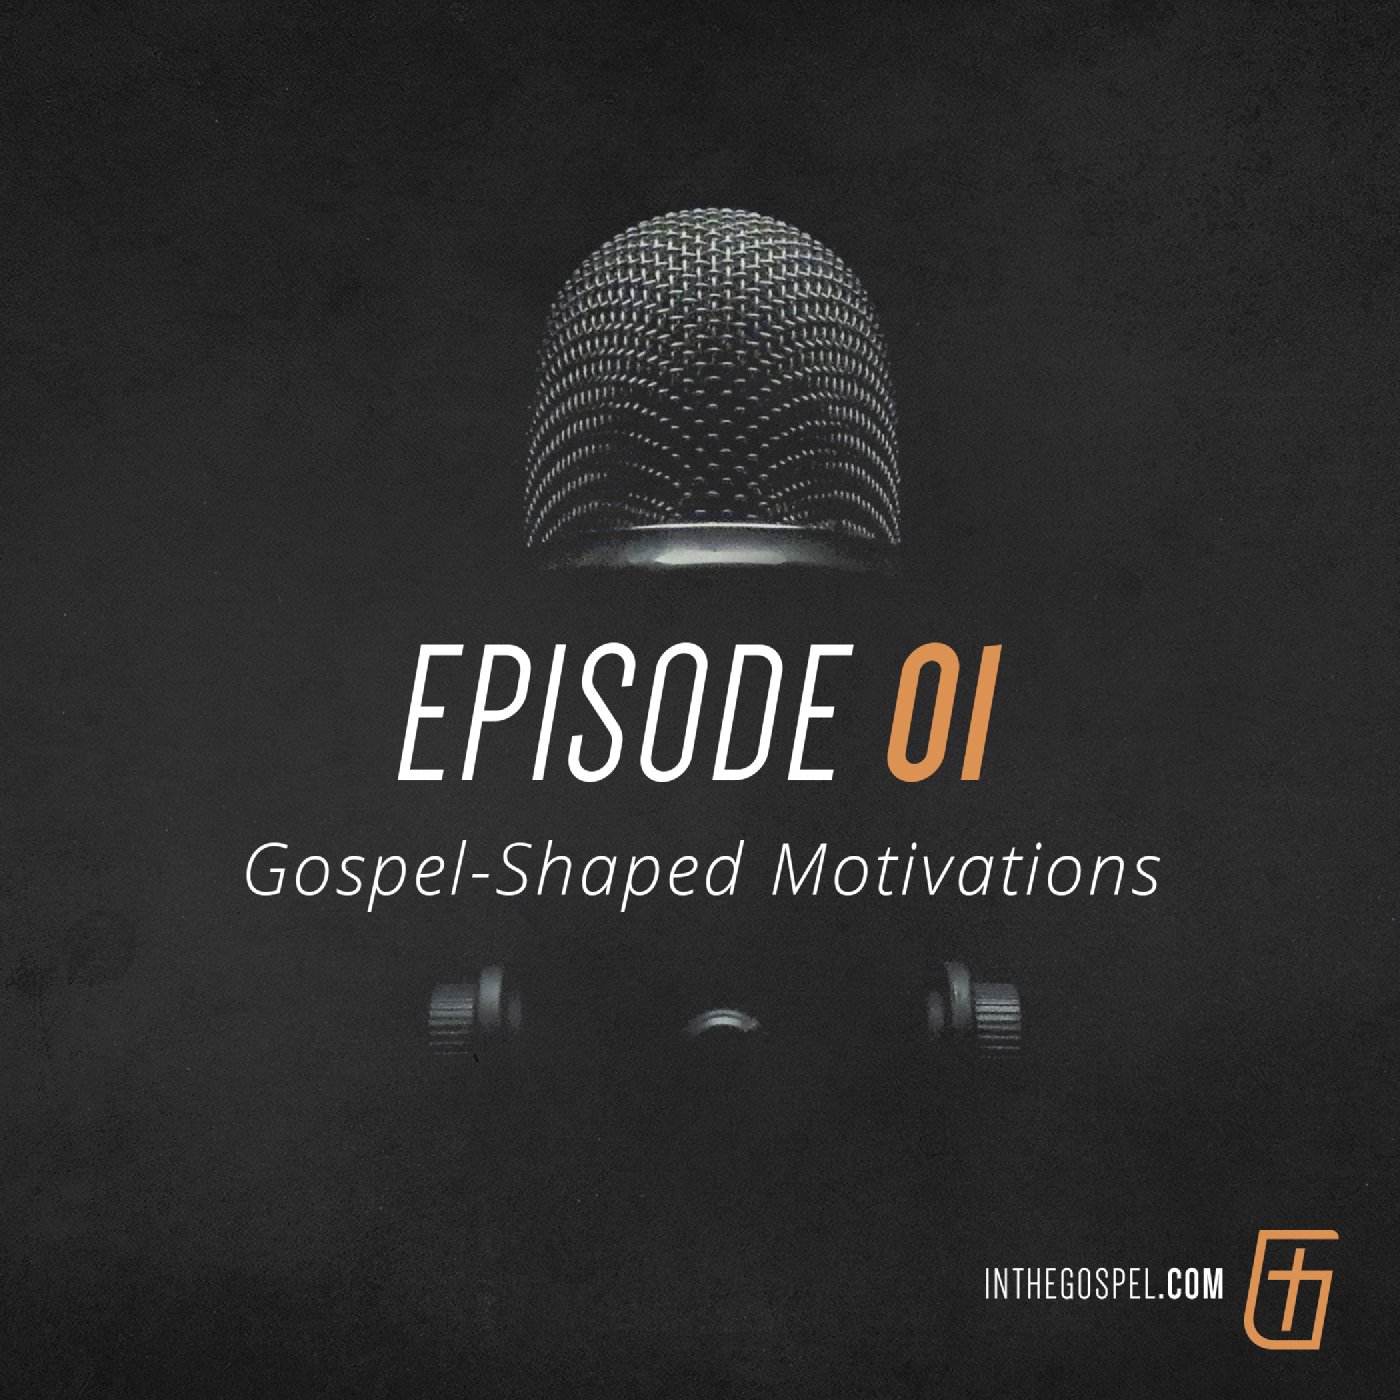 Episode 01: Gospel-Shaped Motivations